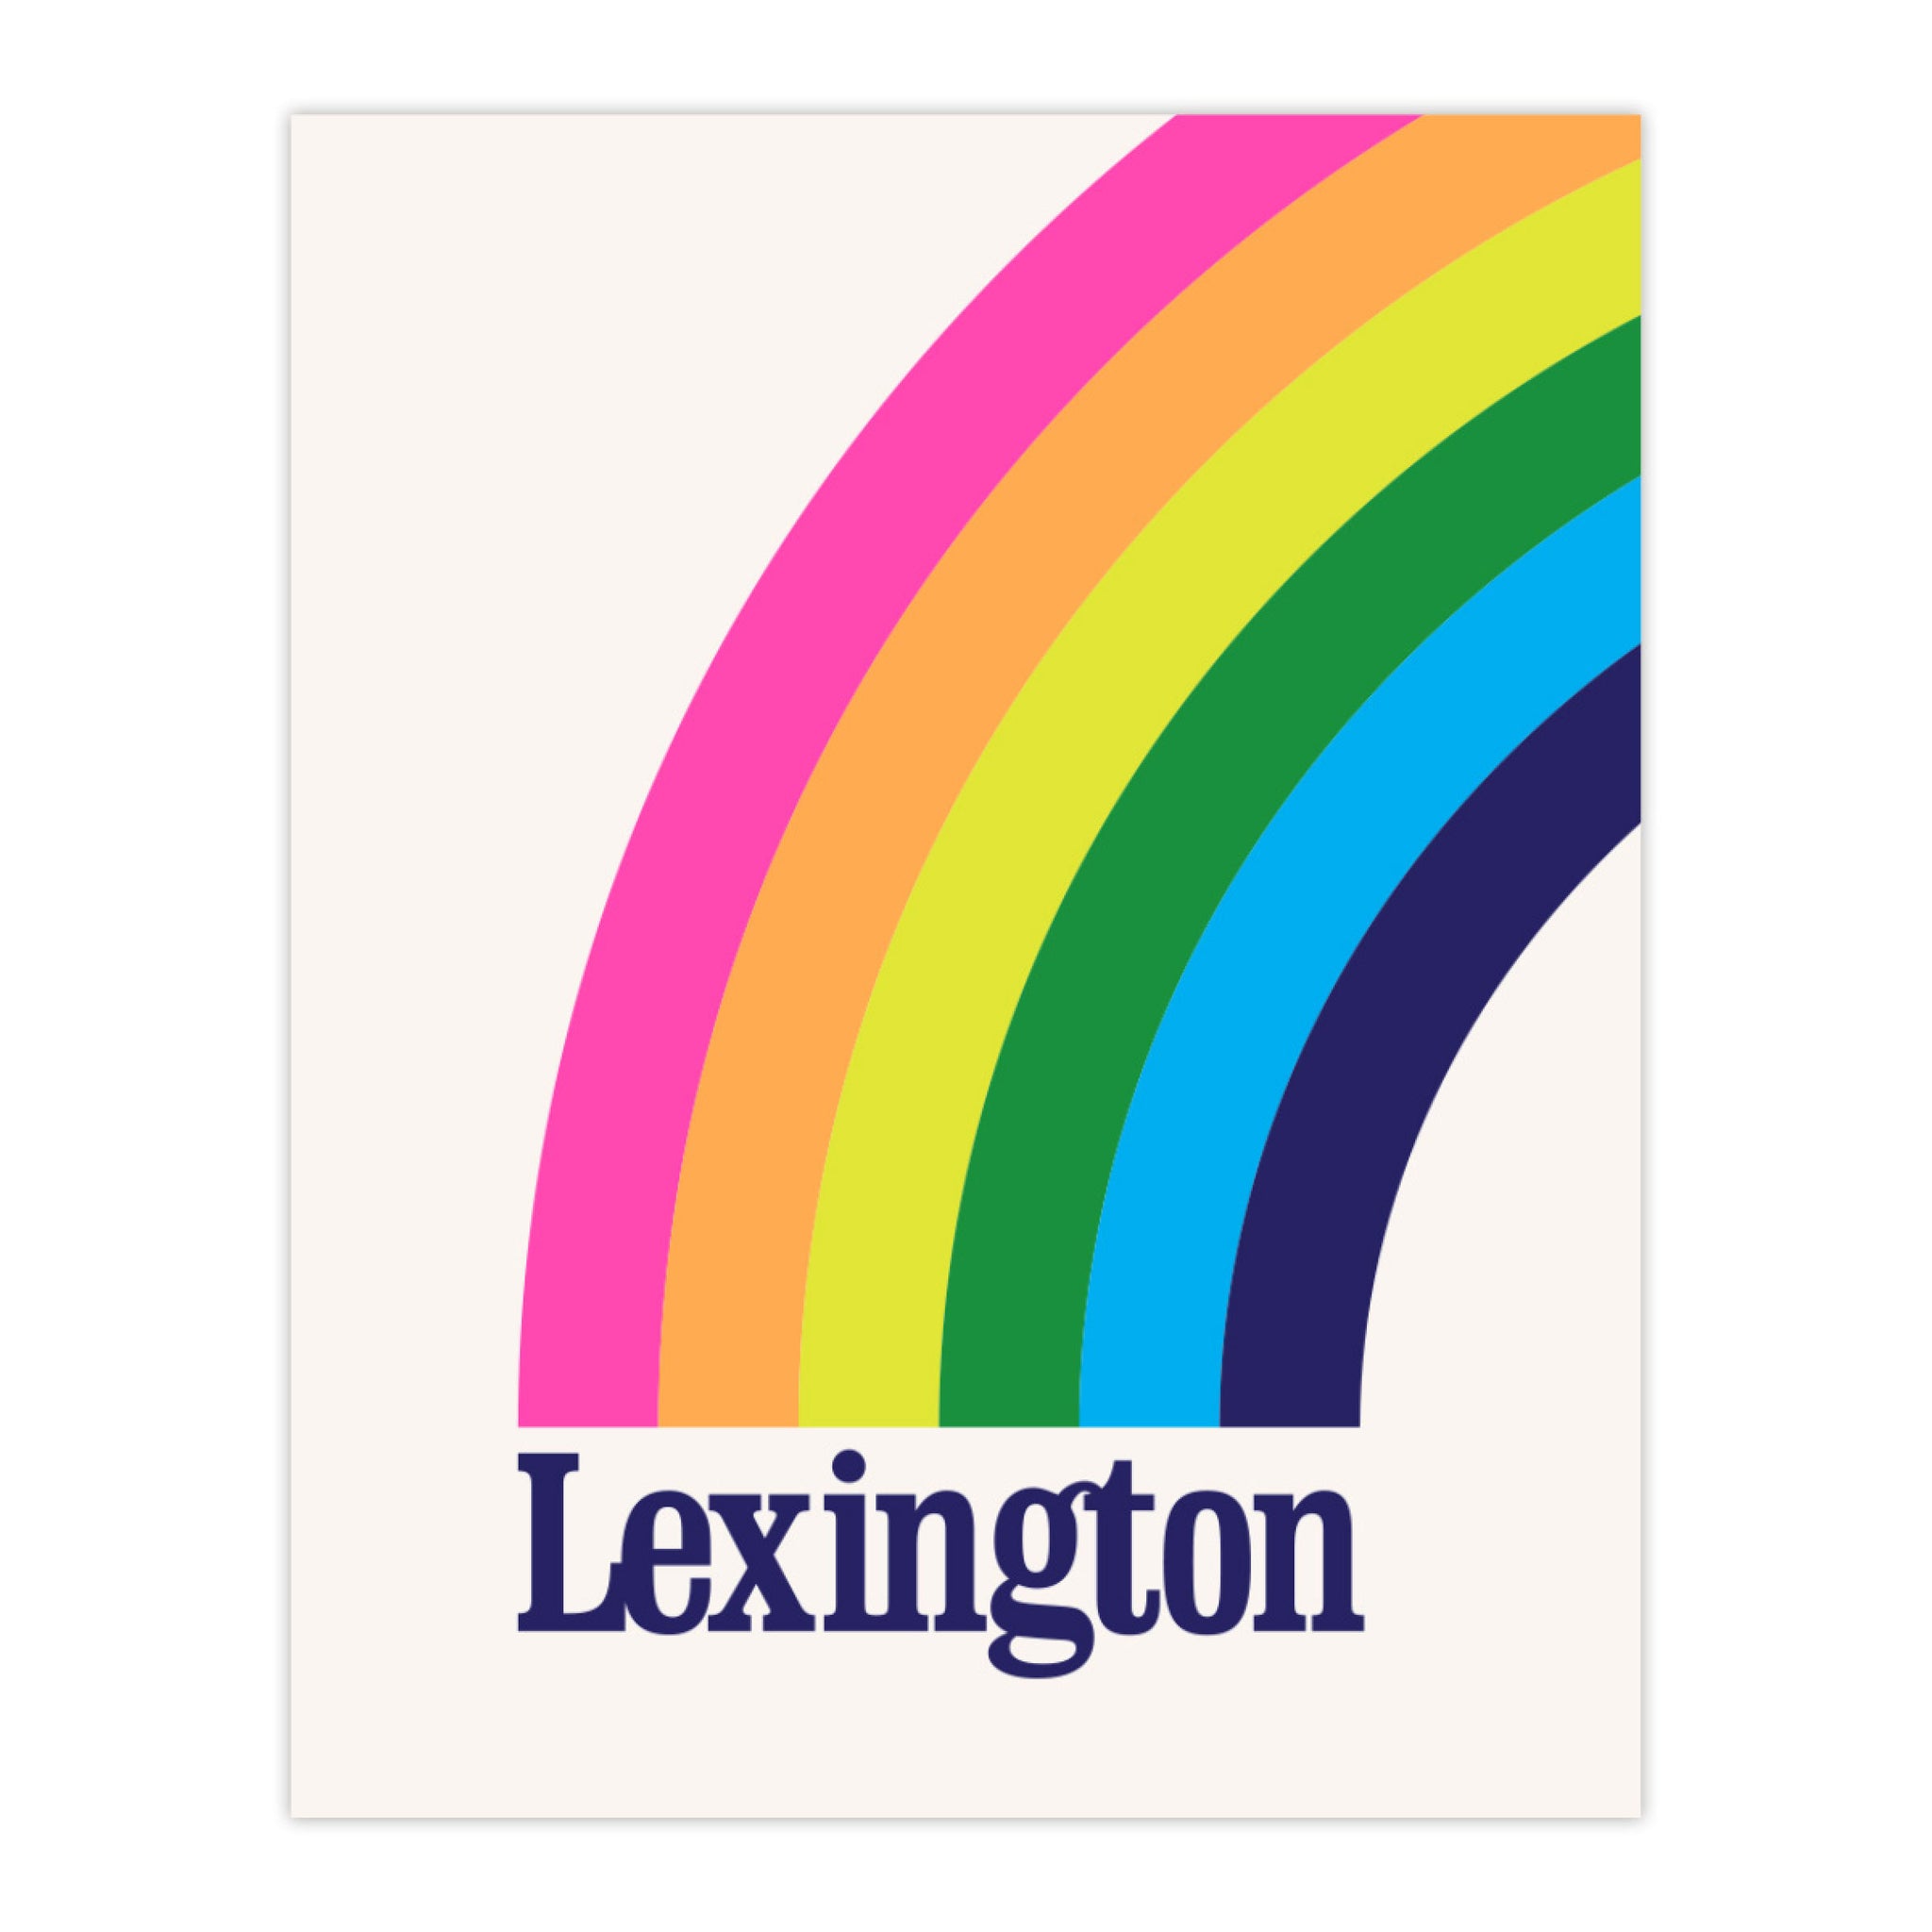 The Lexington Rainbow Print